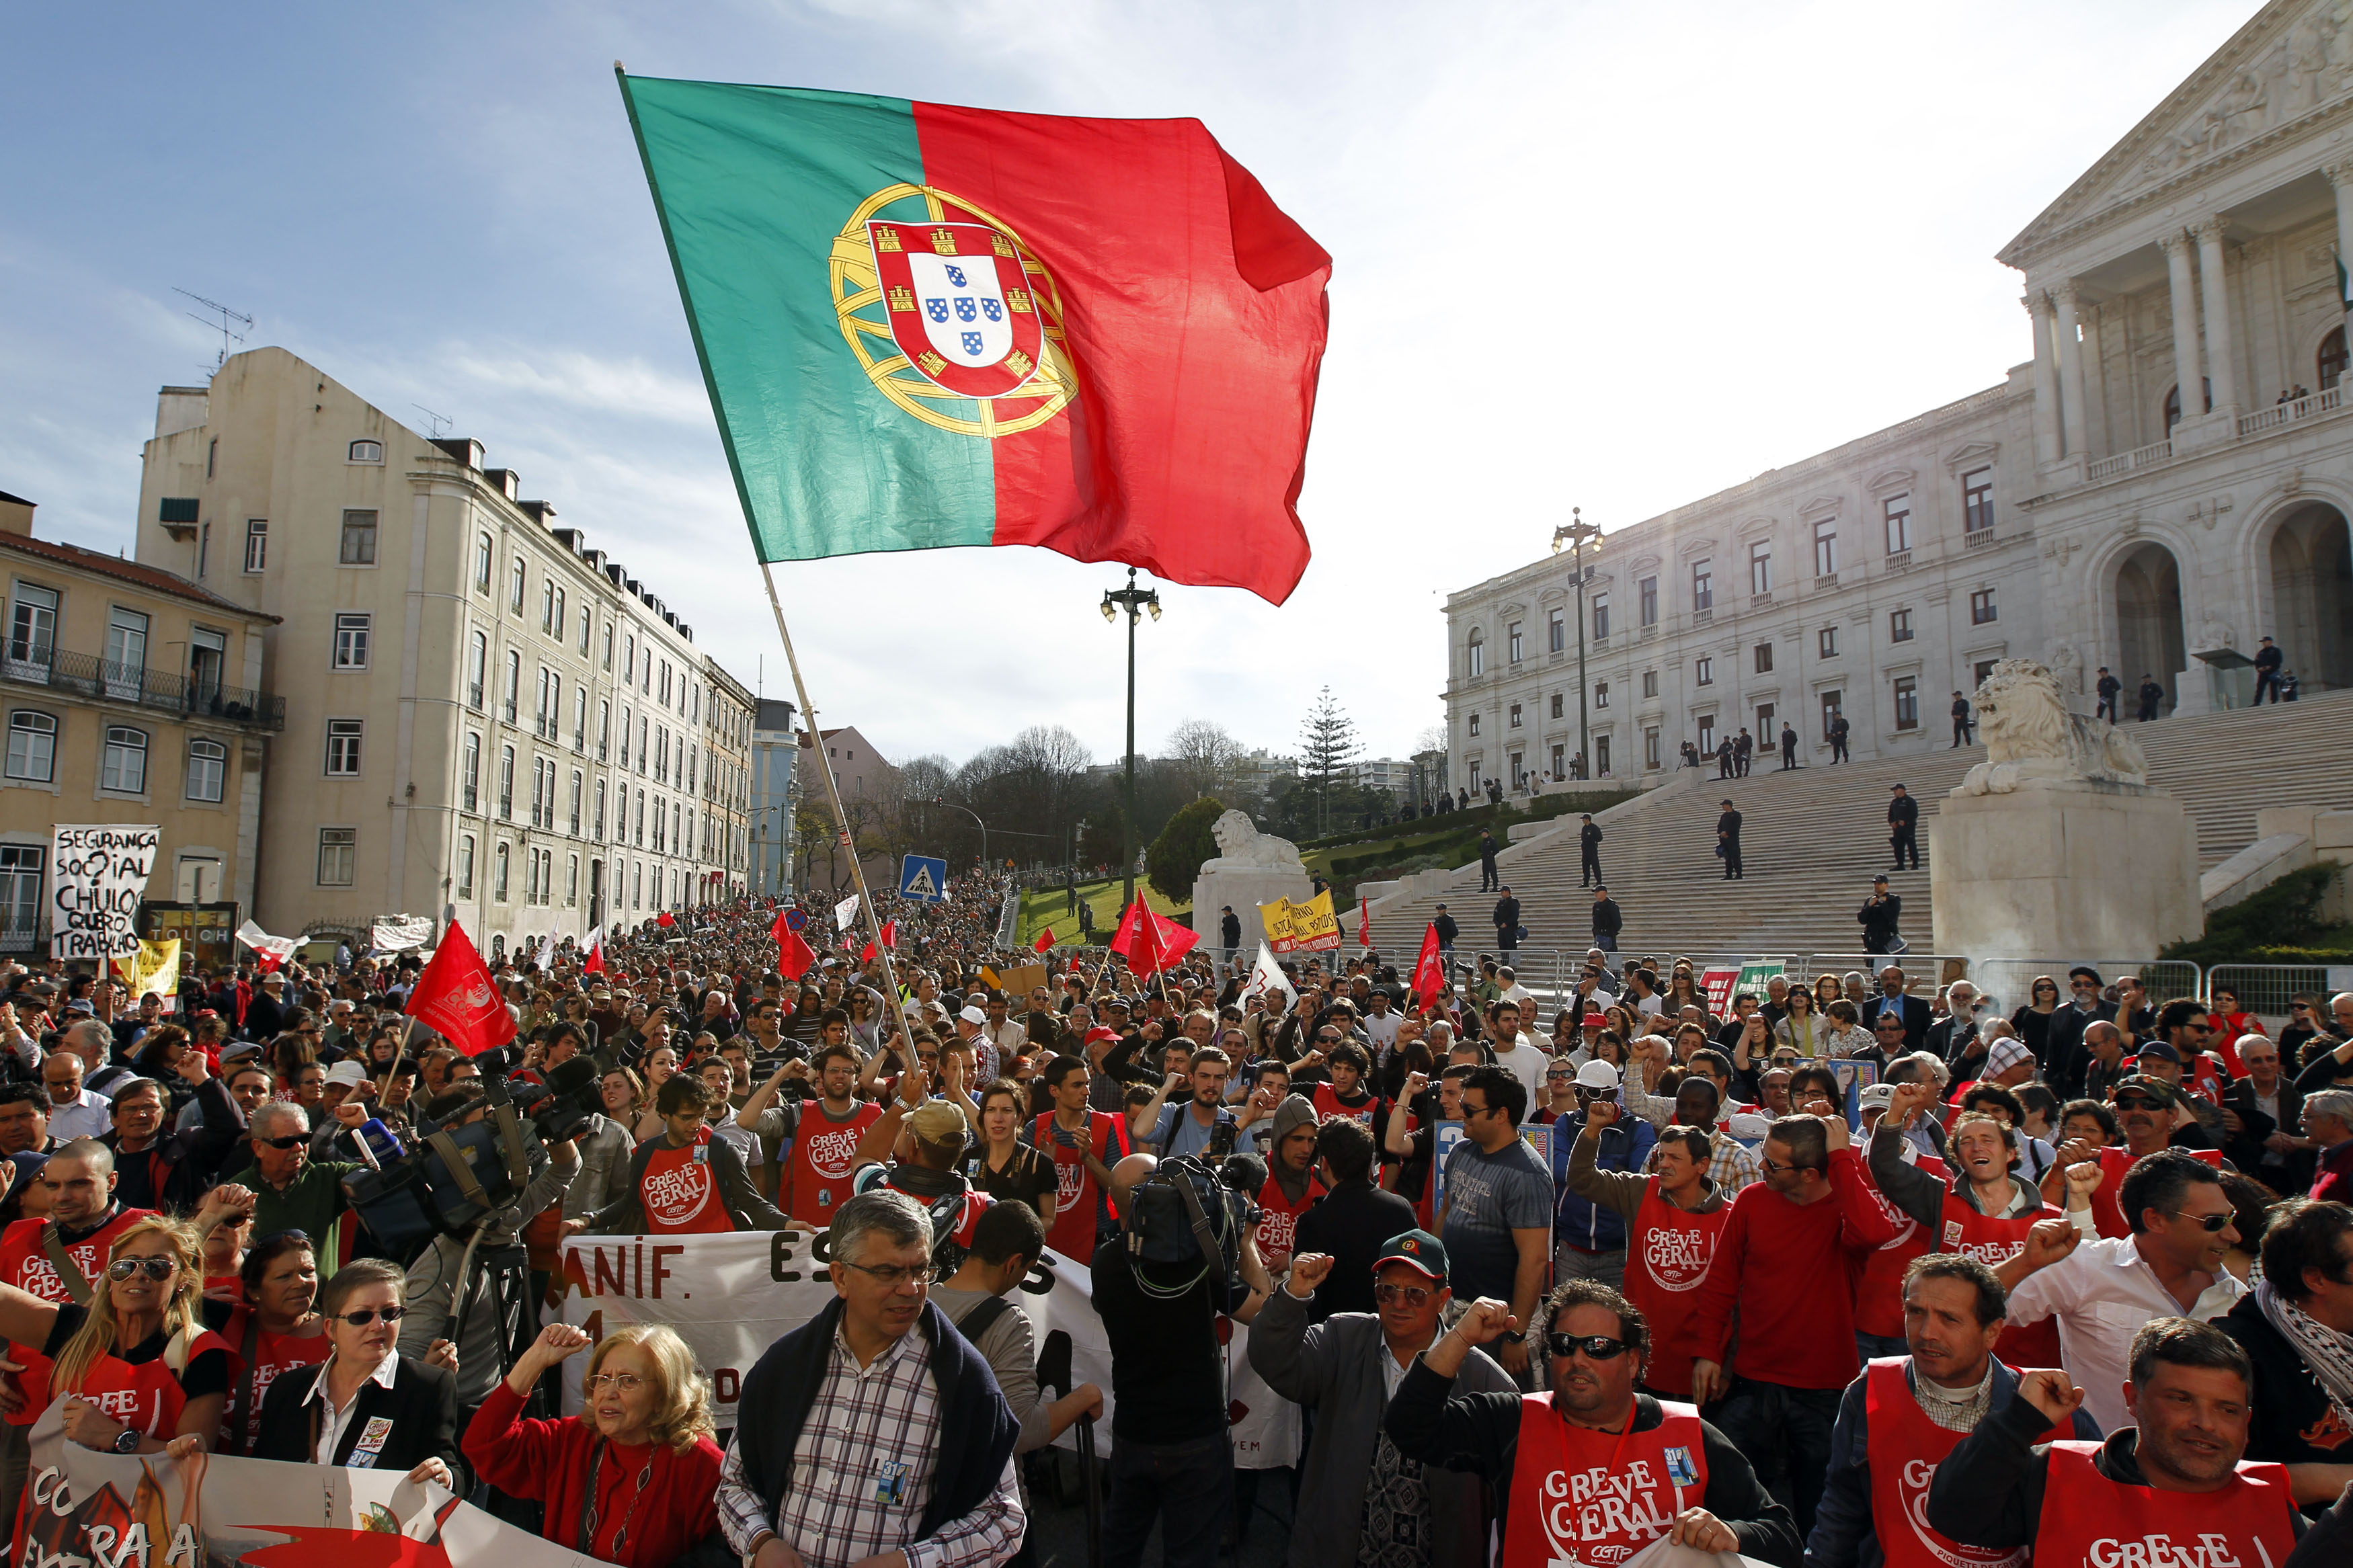 ΔΝΤ προς Πορτογαλία: «Χαλαρώστε τα μέτρα λιτότητας»